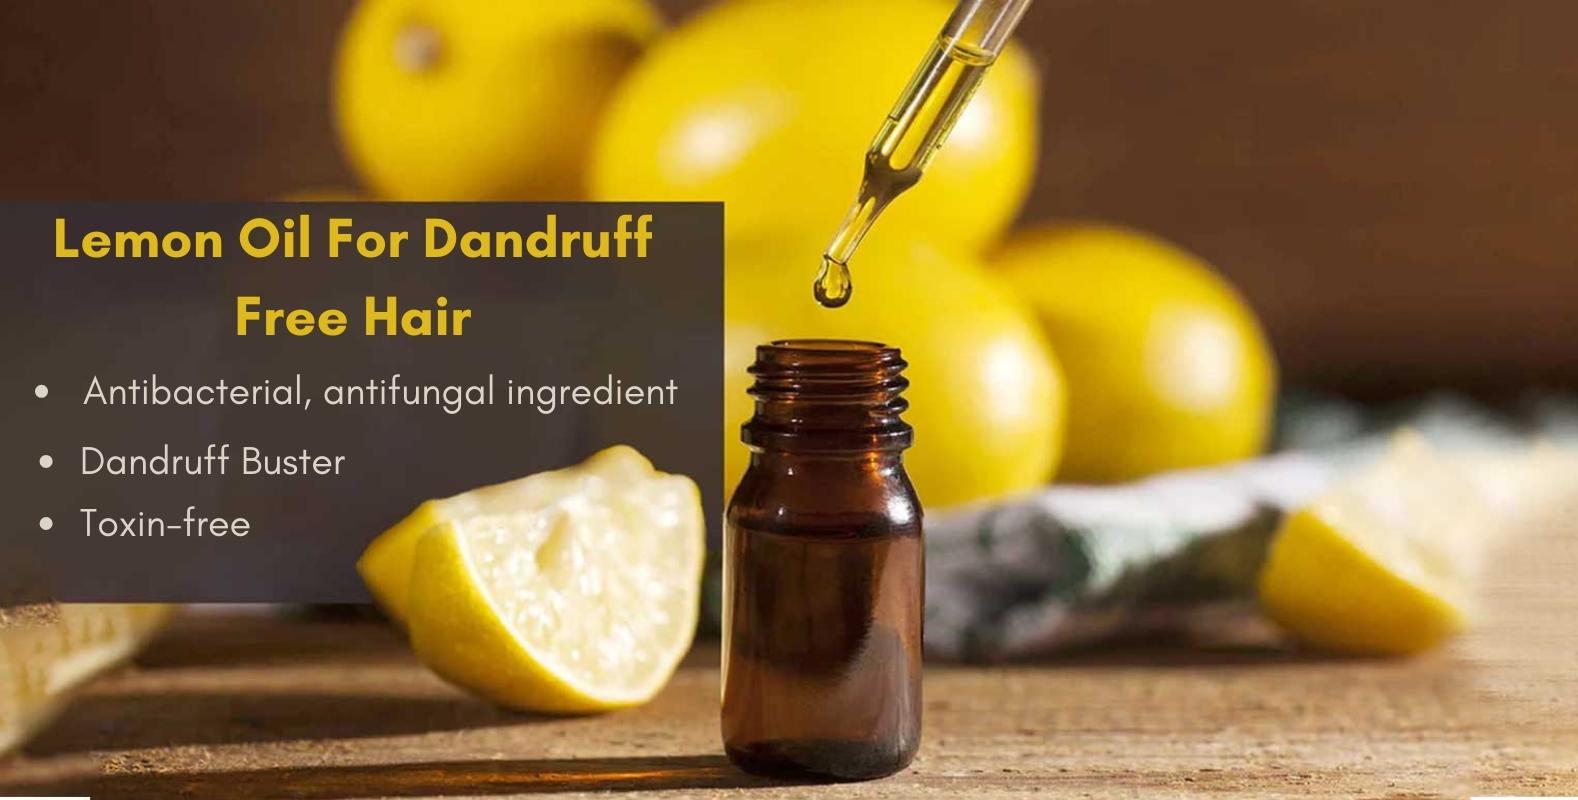 Lemon Oil For Dandruff Free Hair